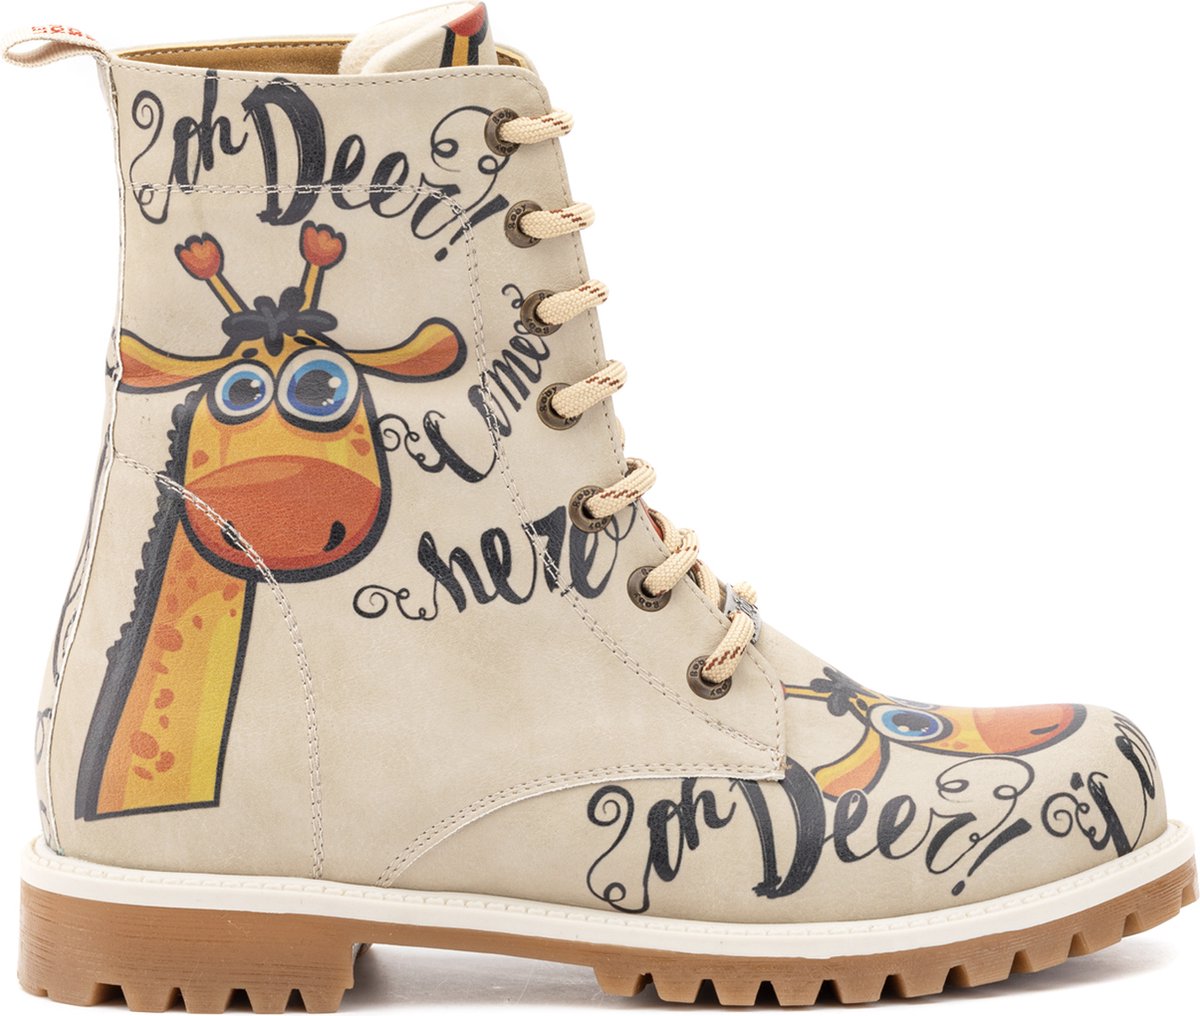 GOBY - Ooo My deer - Boots - Laars - Laarzen - Damesboots - Dames laarzen - Longboots - Handmade - Maat 40